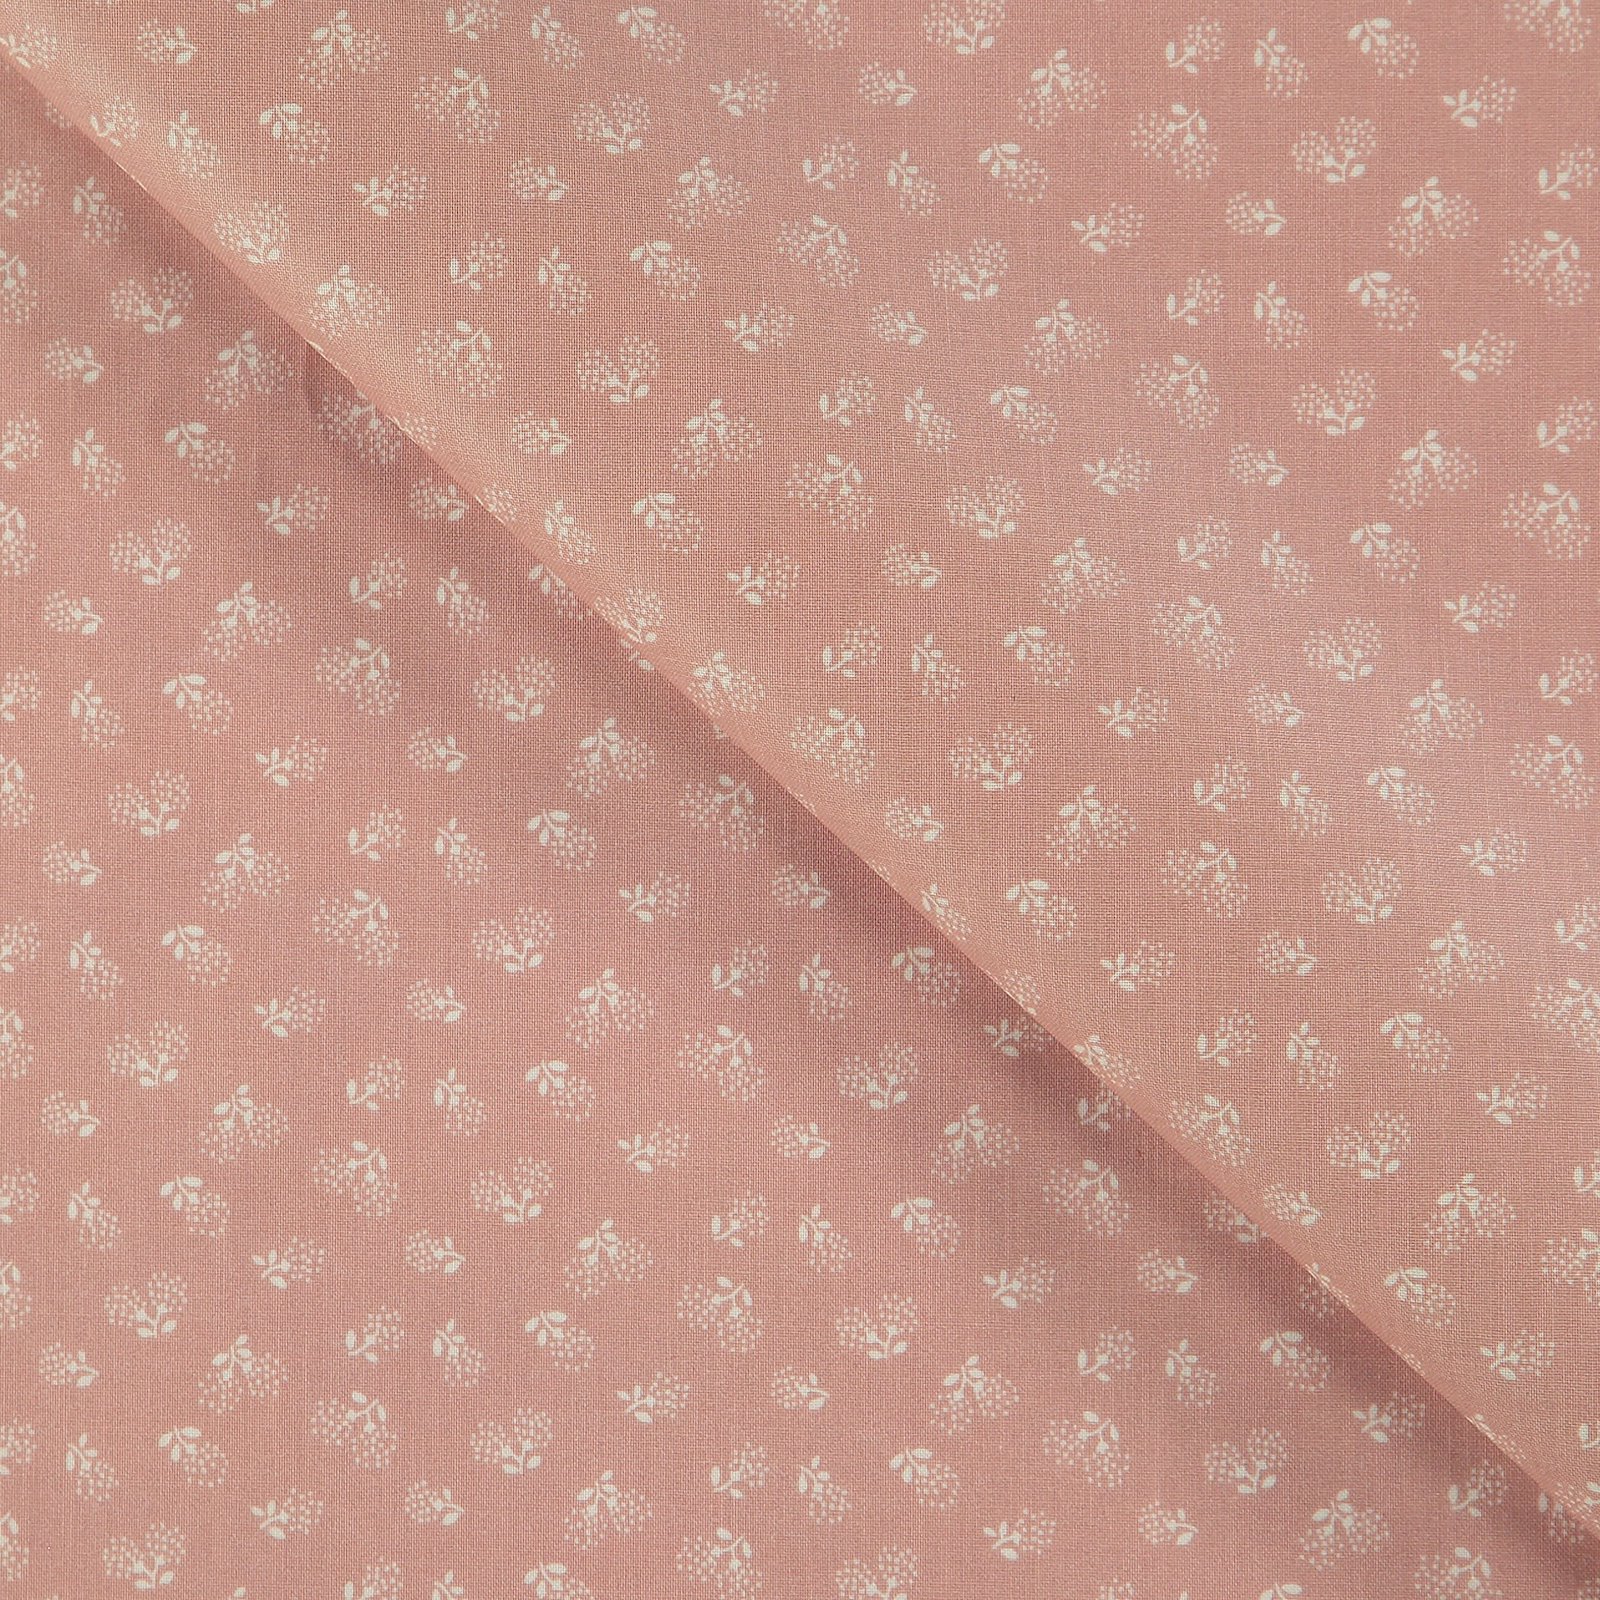 Tekstilvoksduk støvet rosa med blomster 866138_pack